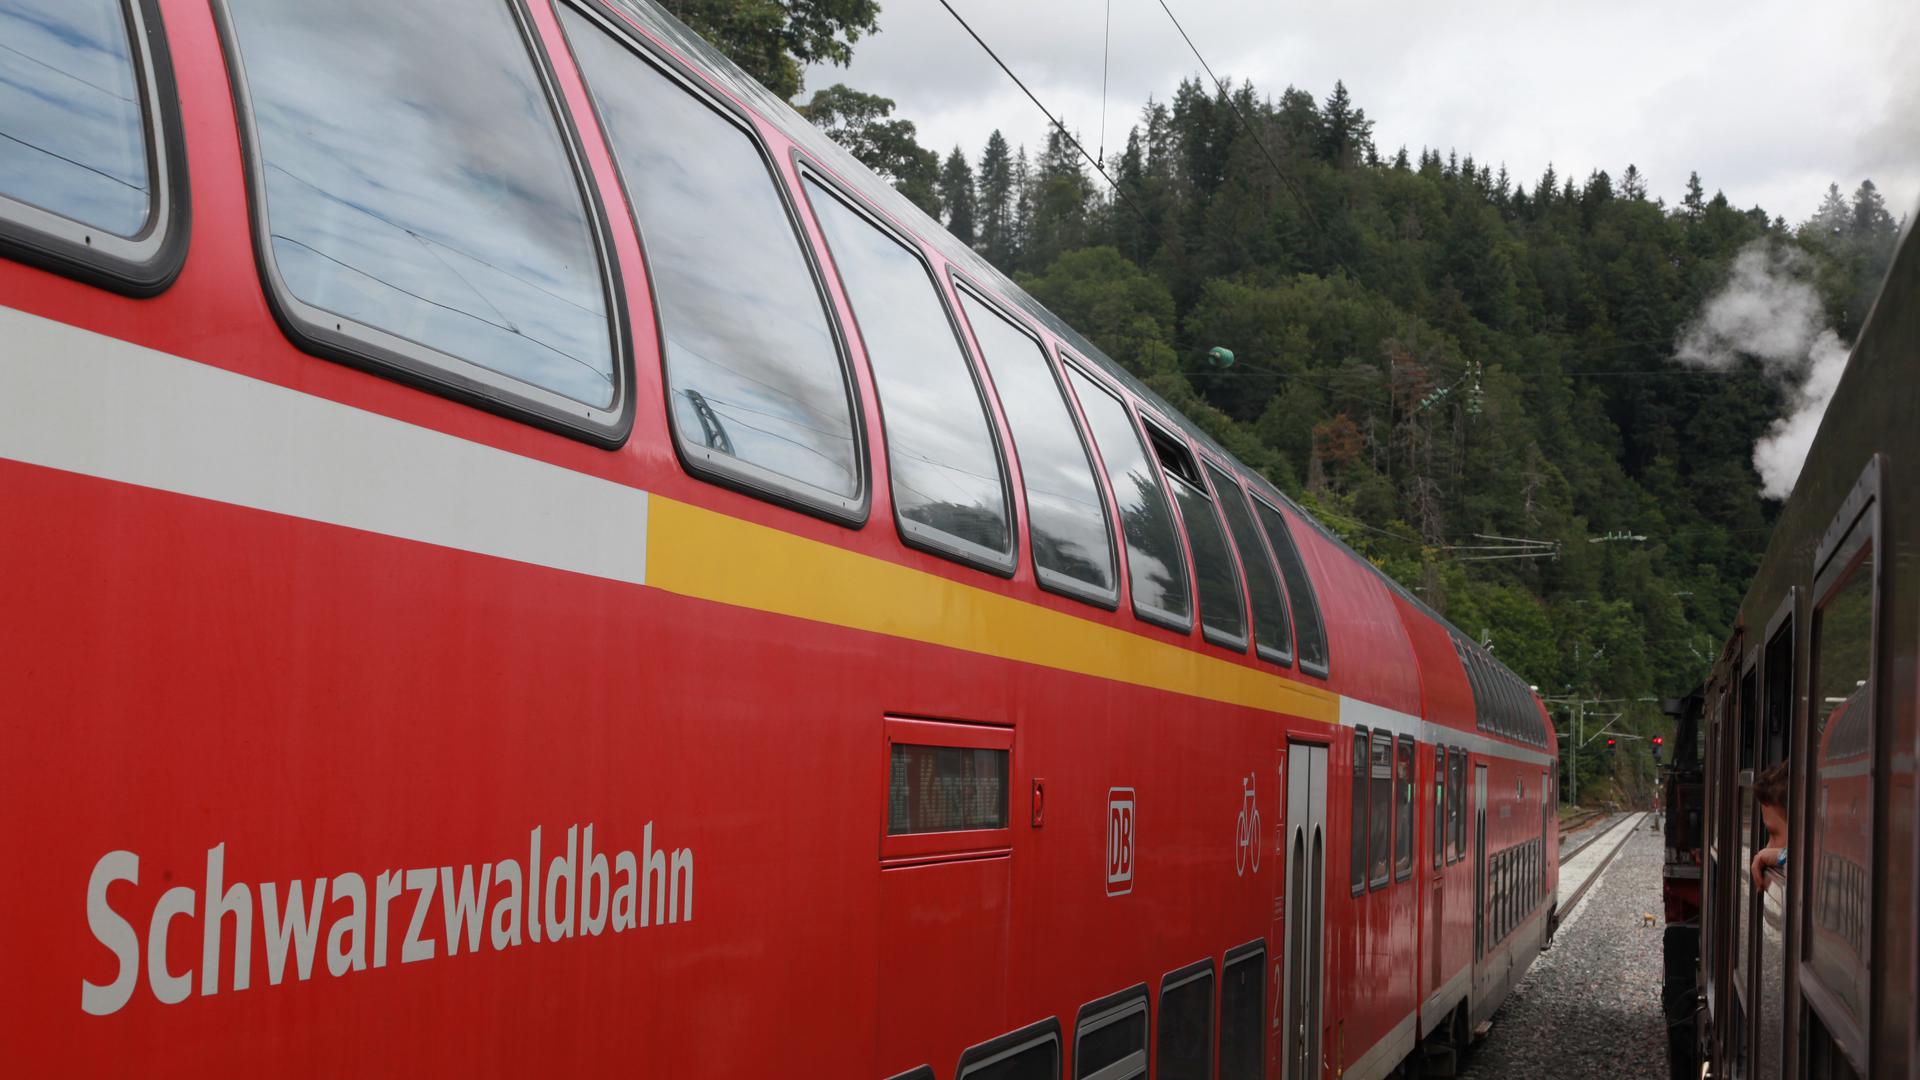 Werbeträger: Die Aufschrift Schwarzwaldbahn findet sich auf den Doppelstockwagen der Regionalzüge. Hier begegnet der Regional-Express der DB dem Dampfzug der EFZ. Foto: